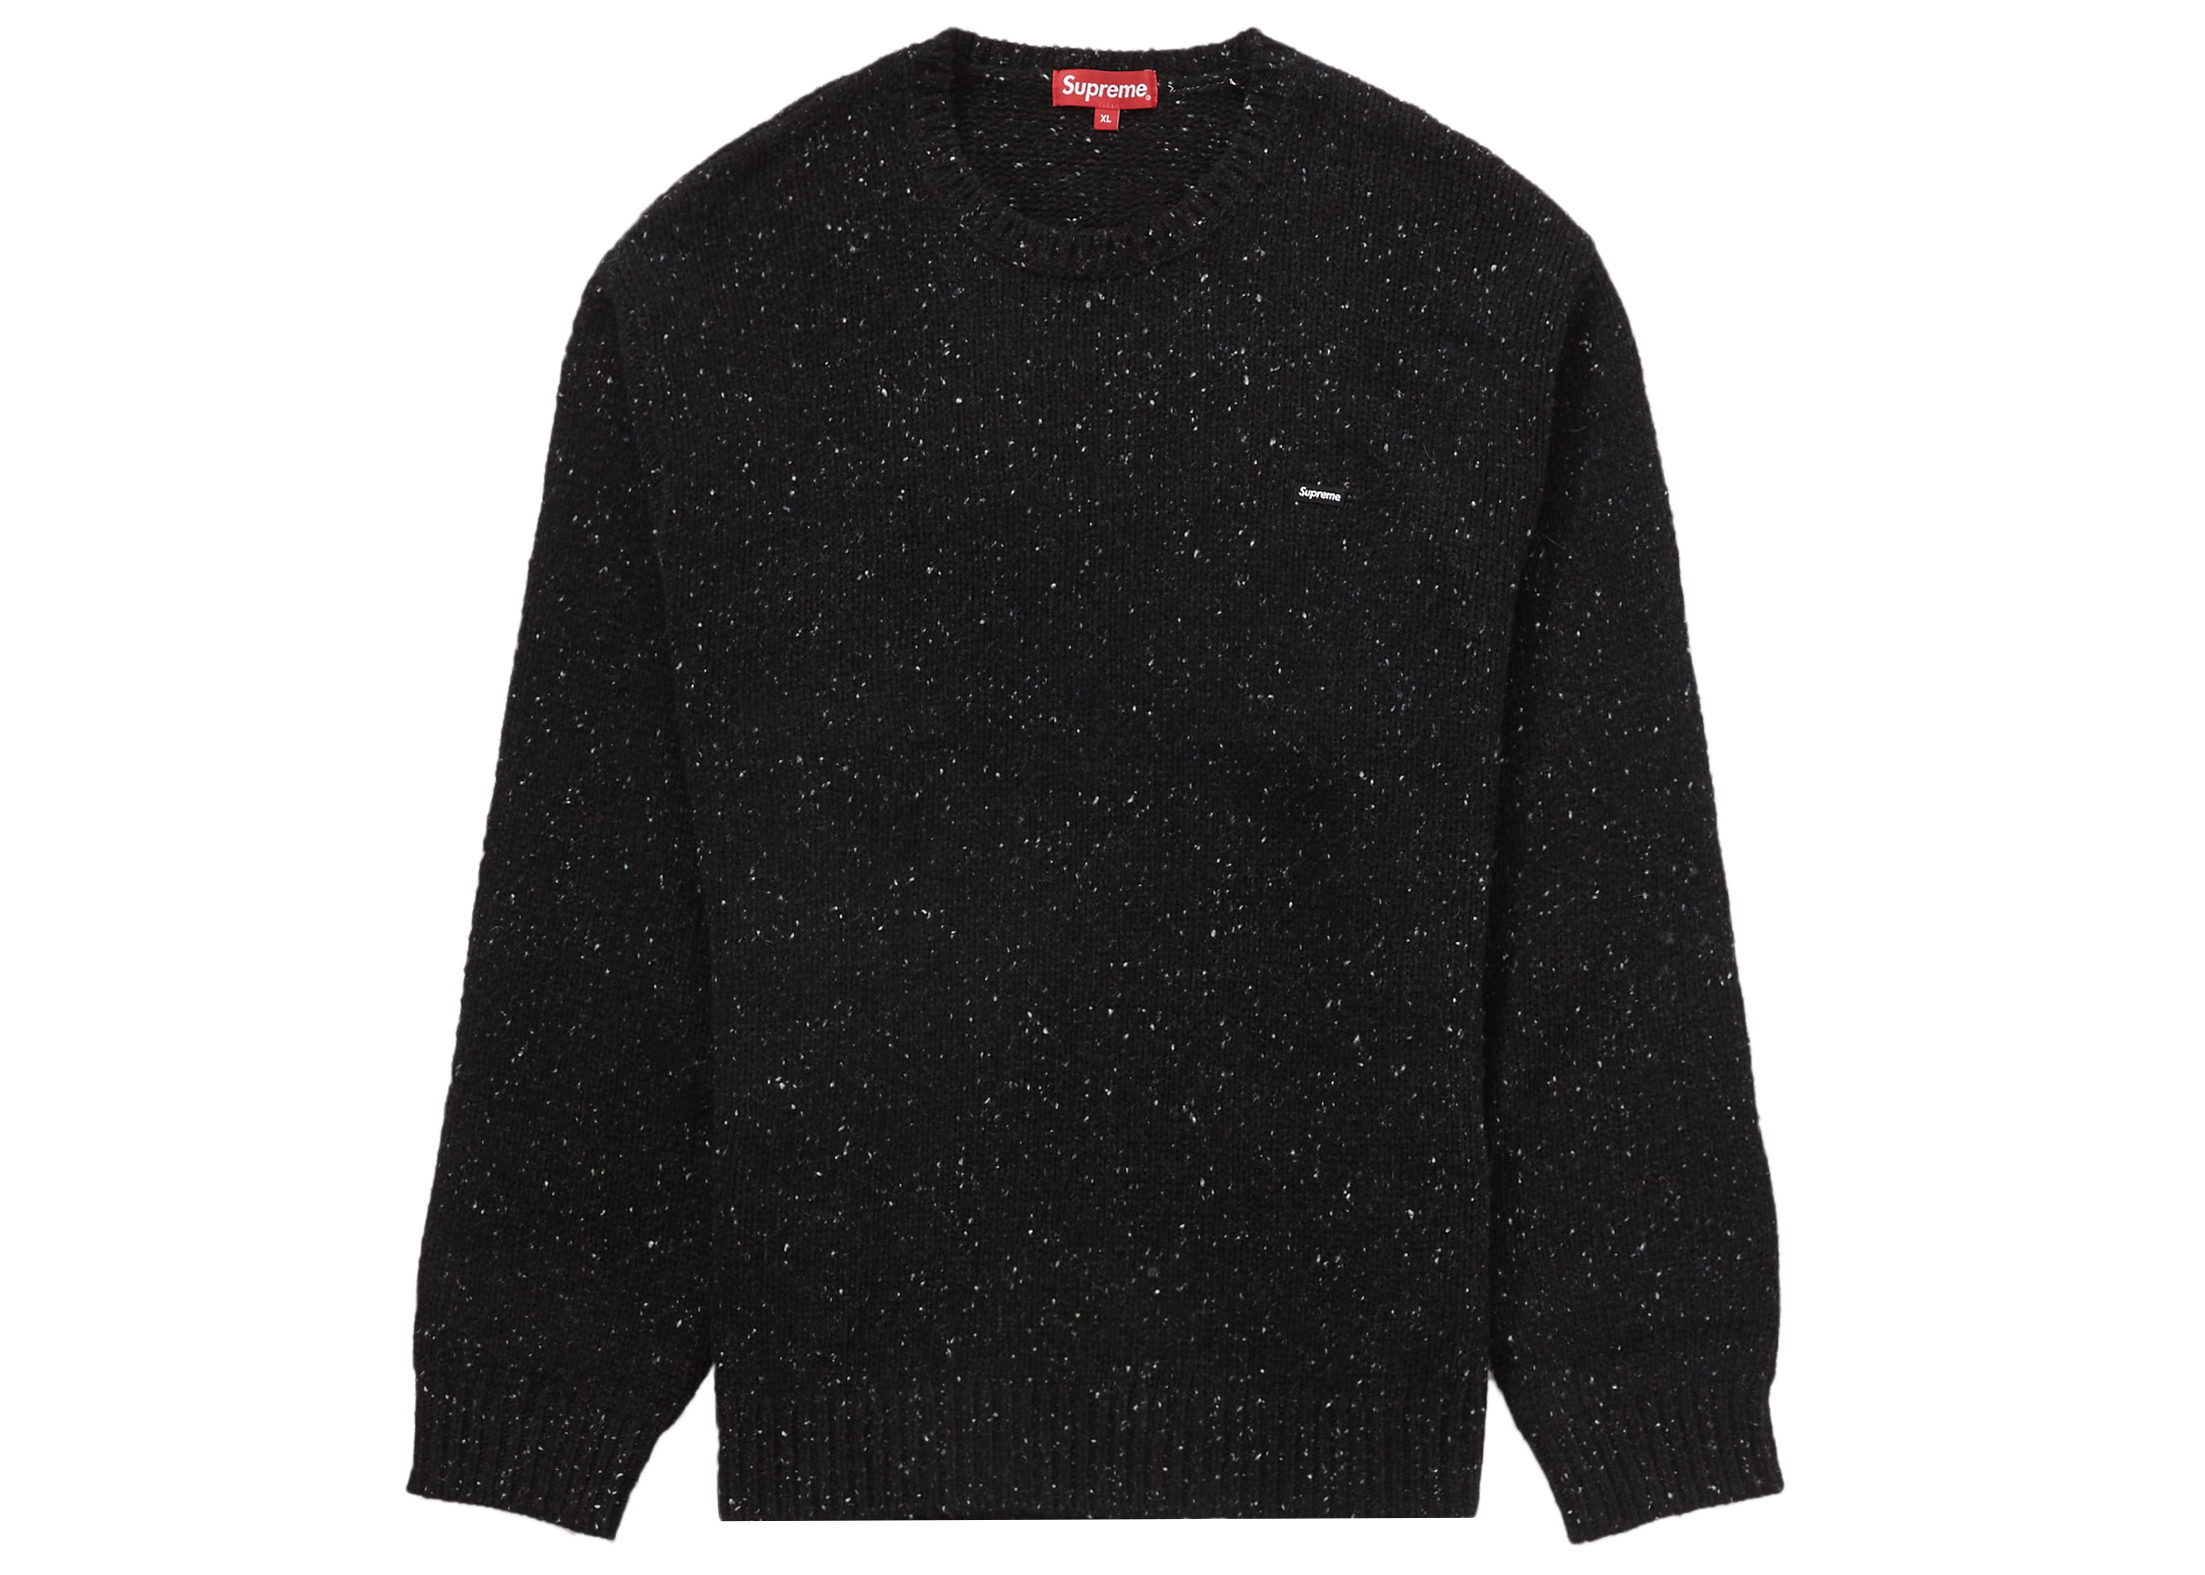 Supreme Small Box Speckle Sweater Black - FW22 Men's - US